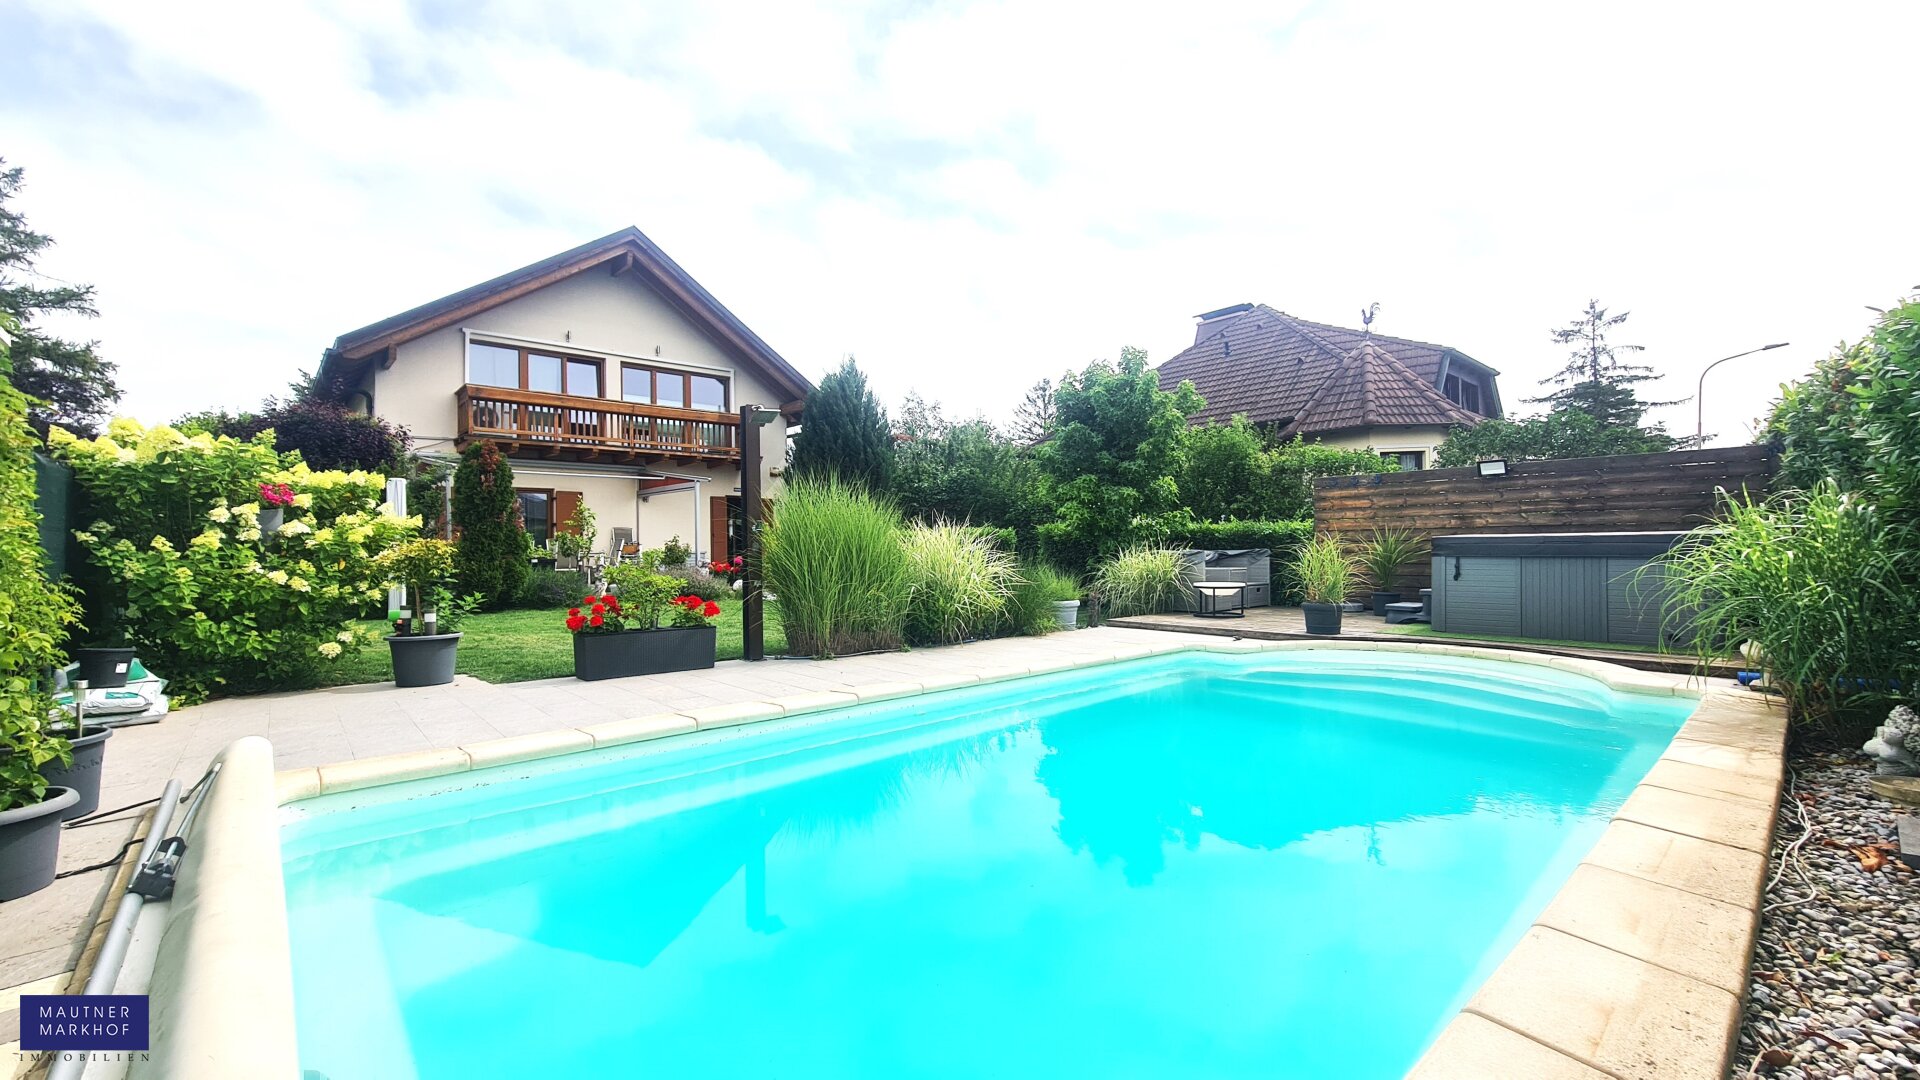 Attraktives Einfamilienhaus mit Pool und Gartenparadies in Kapellerfeld bei Wien – Wohlfühloase pur für die ganze Familie!